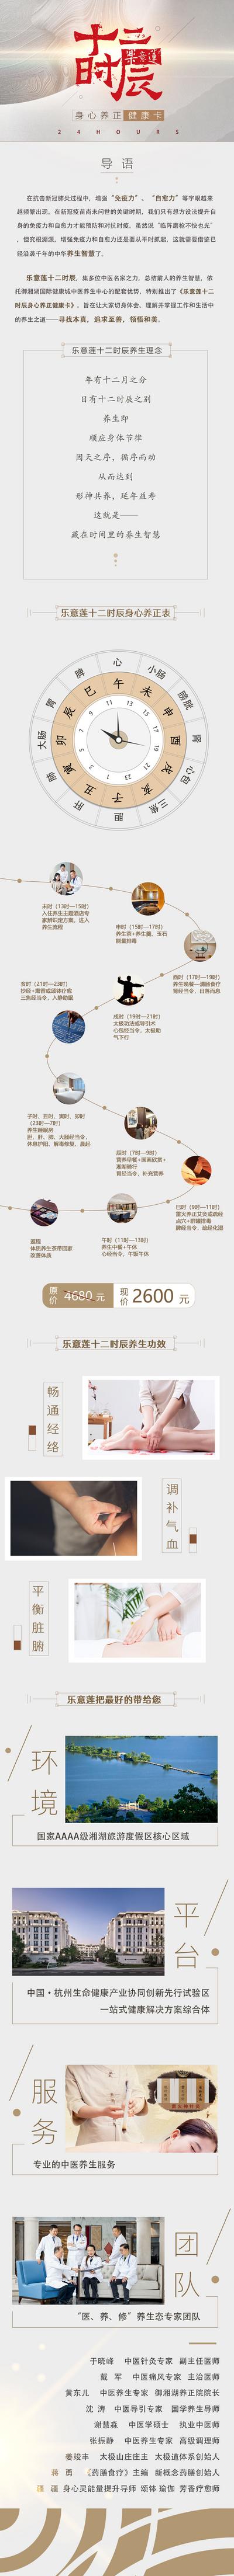 南门网 专题设计 长图 中国风 十二时辰 文化 养生 中式 灰金